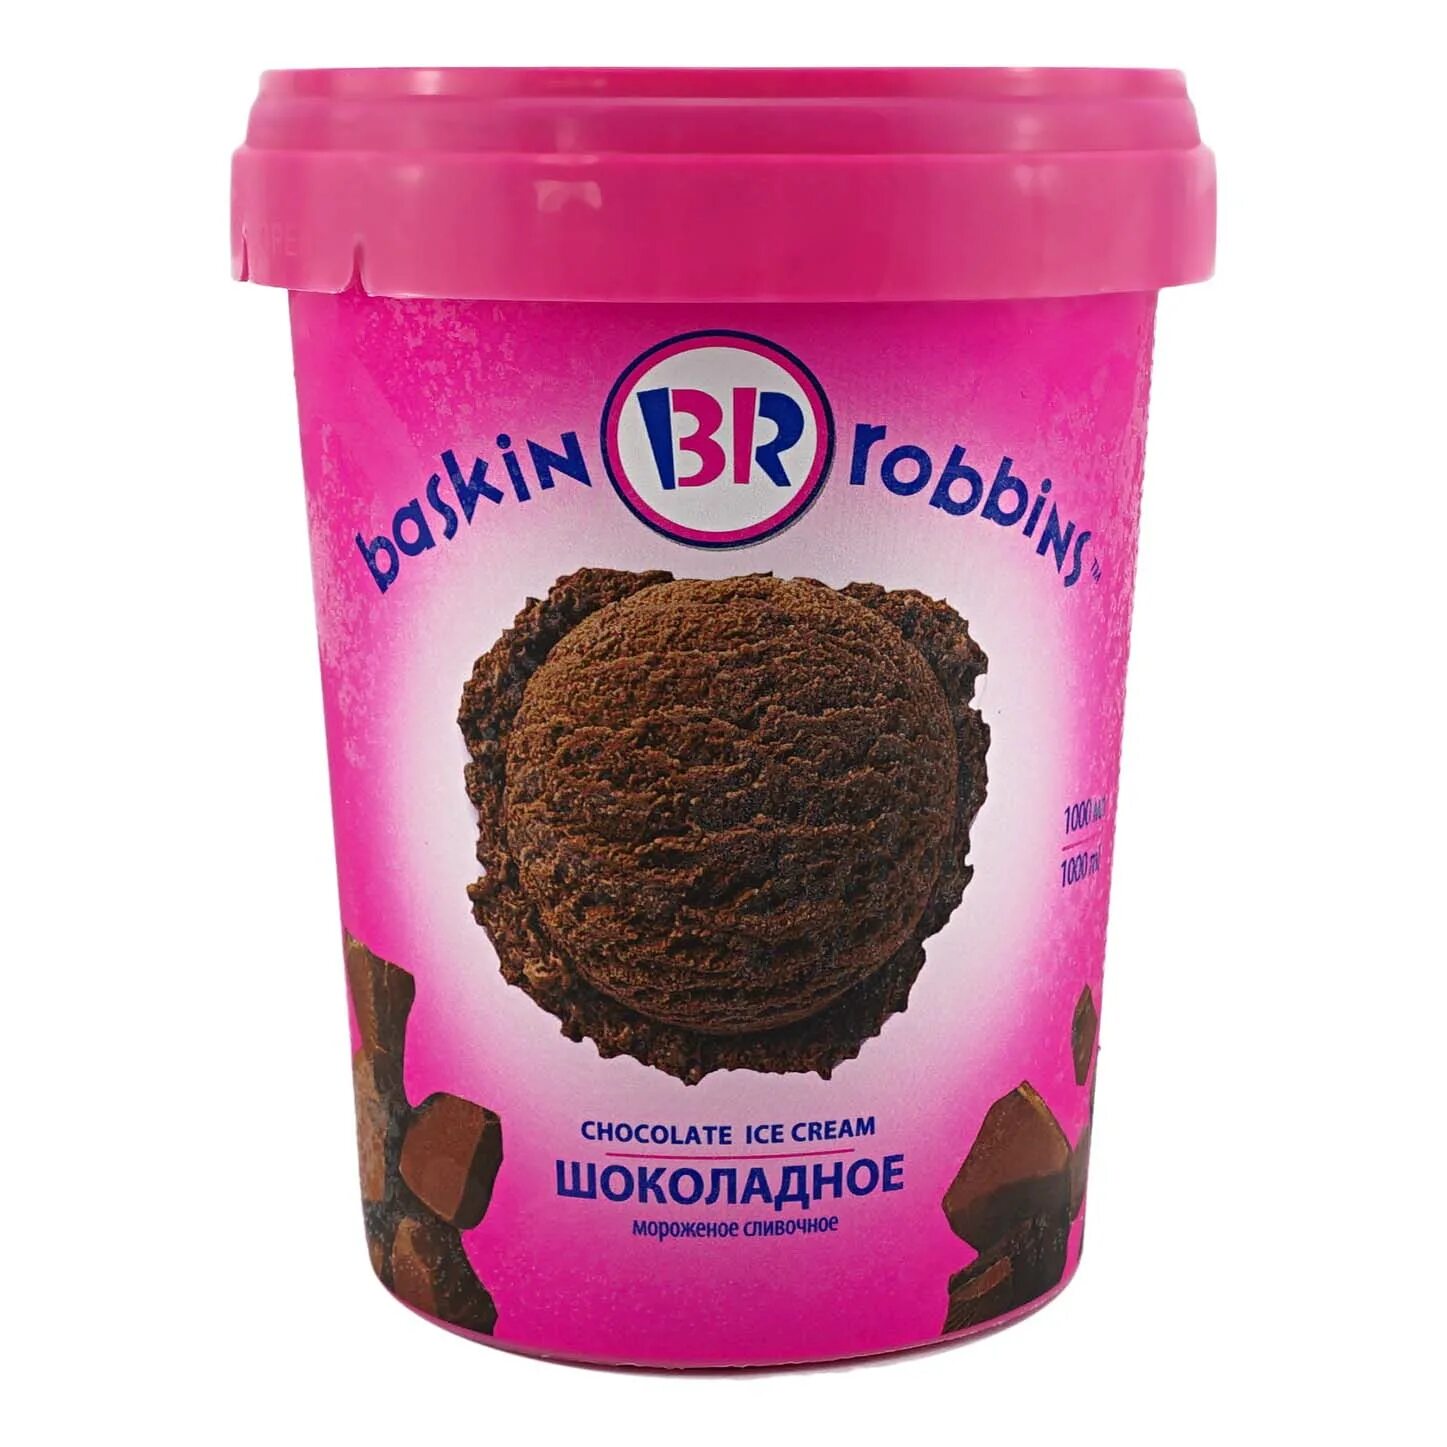 Мороженое Баскин Роббинс шоколадное 1000мл. Баскин Роббинс мороженое шоколадное. Баскин Роббинс 1000 мл. Баскин Роббинс мороженое 1000 мл.